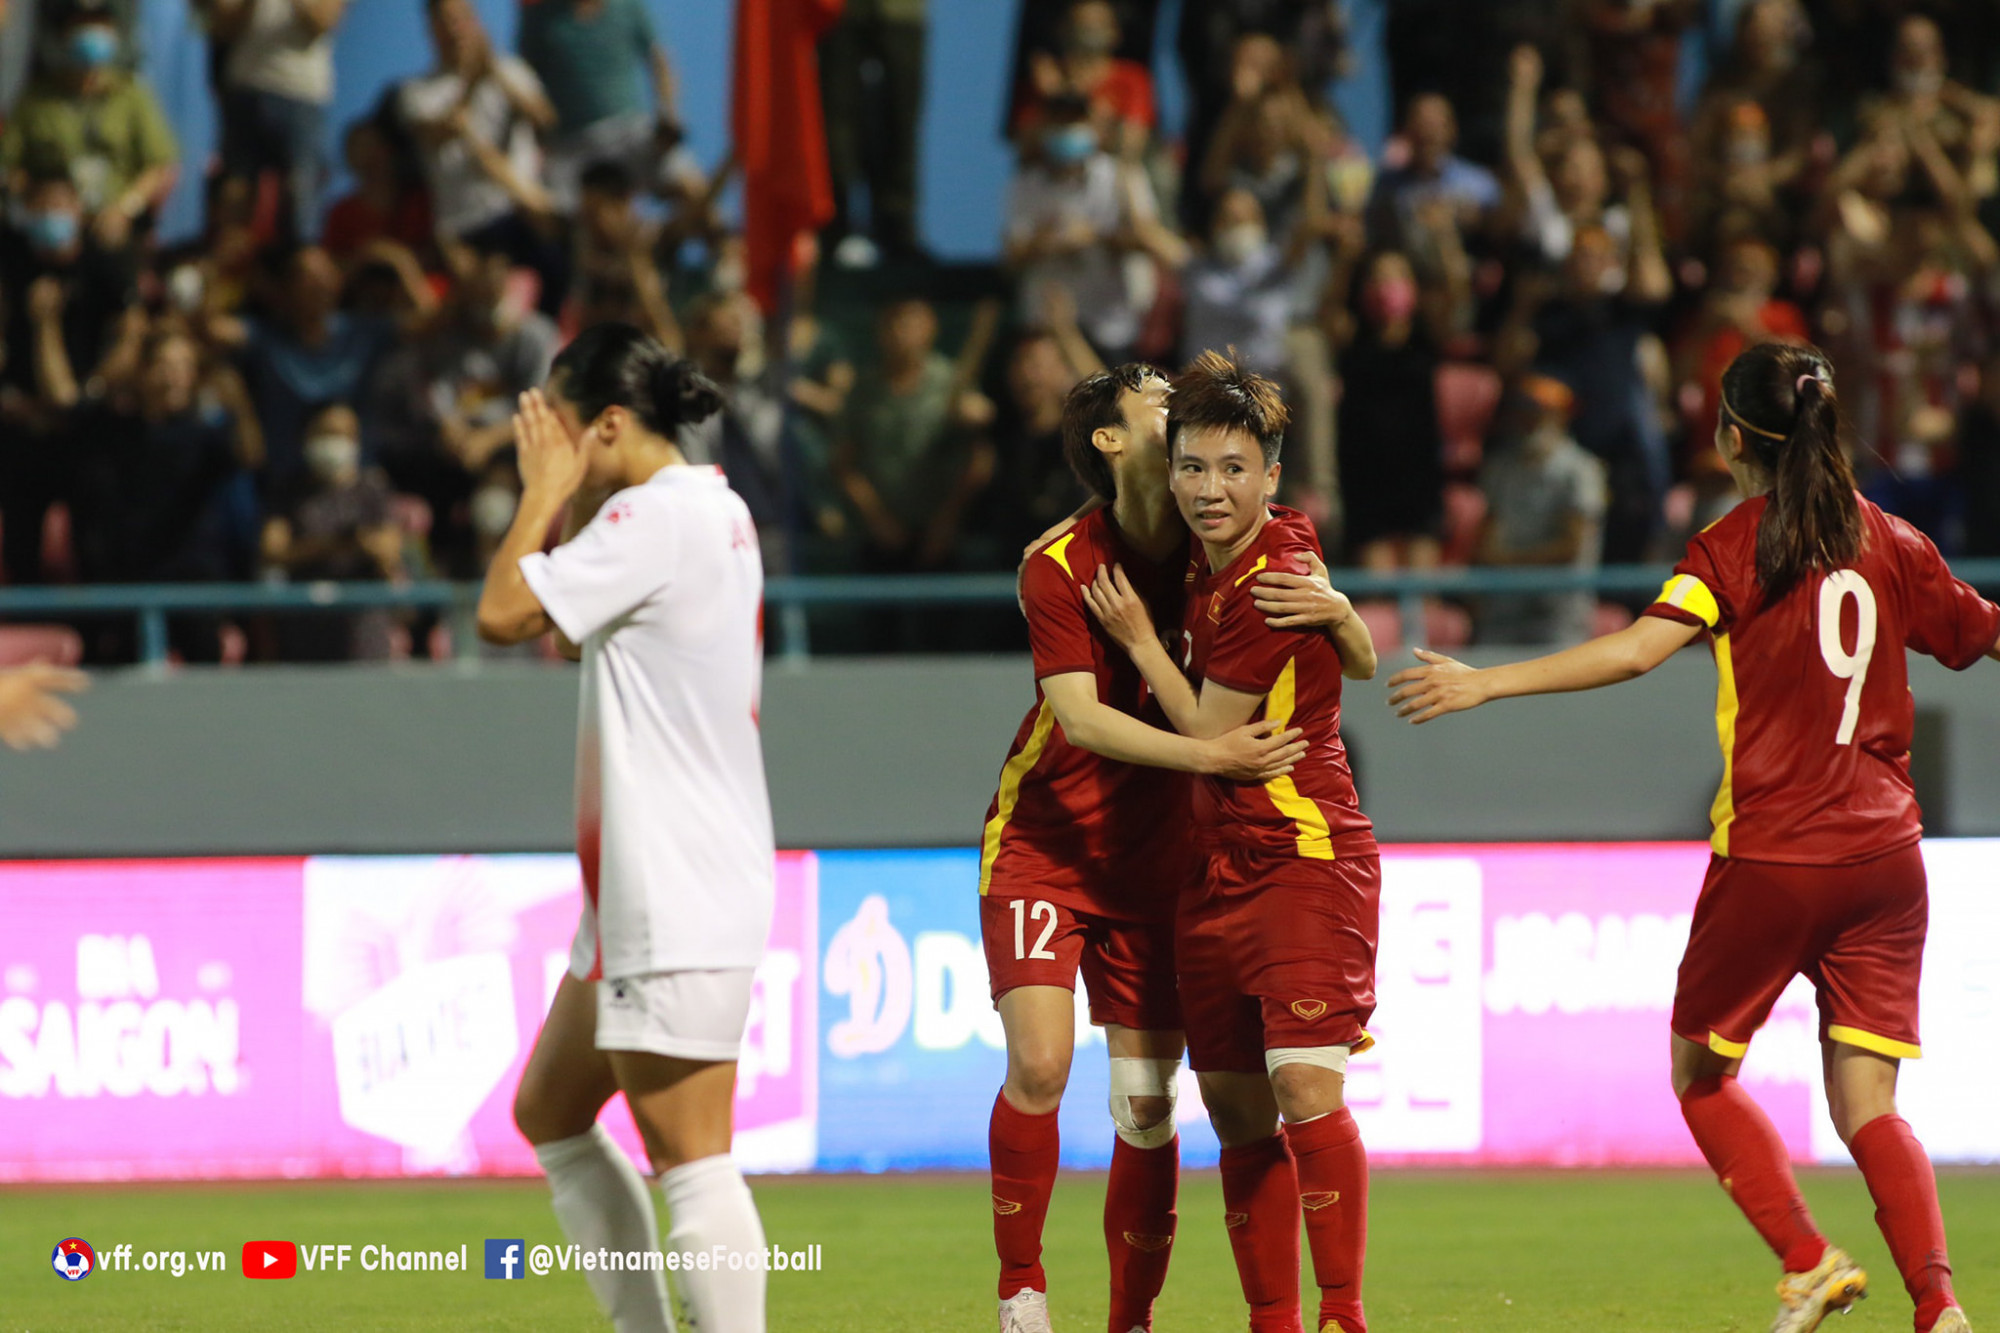 Đúng như dự đoán, vừa vào trận 15 phút, tuyển nữ Việt Nam đã nhận bàn thua đầu tiên. Tuy nhiên, bằng sự kết nốui tuyệt vời cũng như chiến thuật hợp lý, tuyển nữ Việt Nam đã lội ngược dòng thành công với hai bàn thắng của 